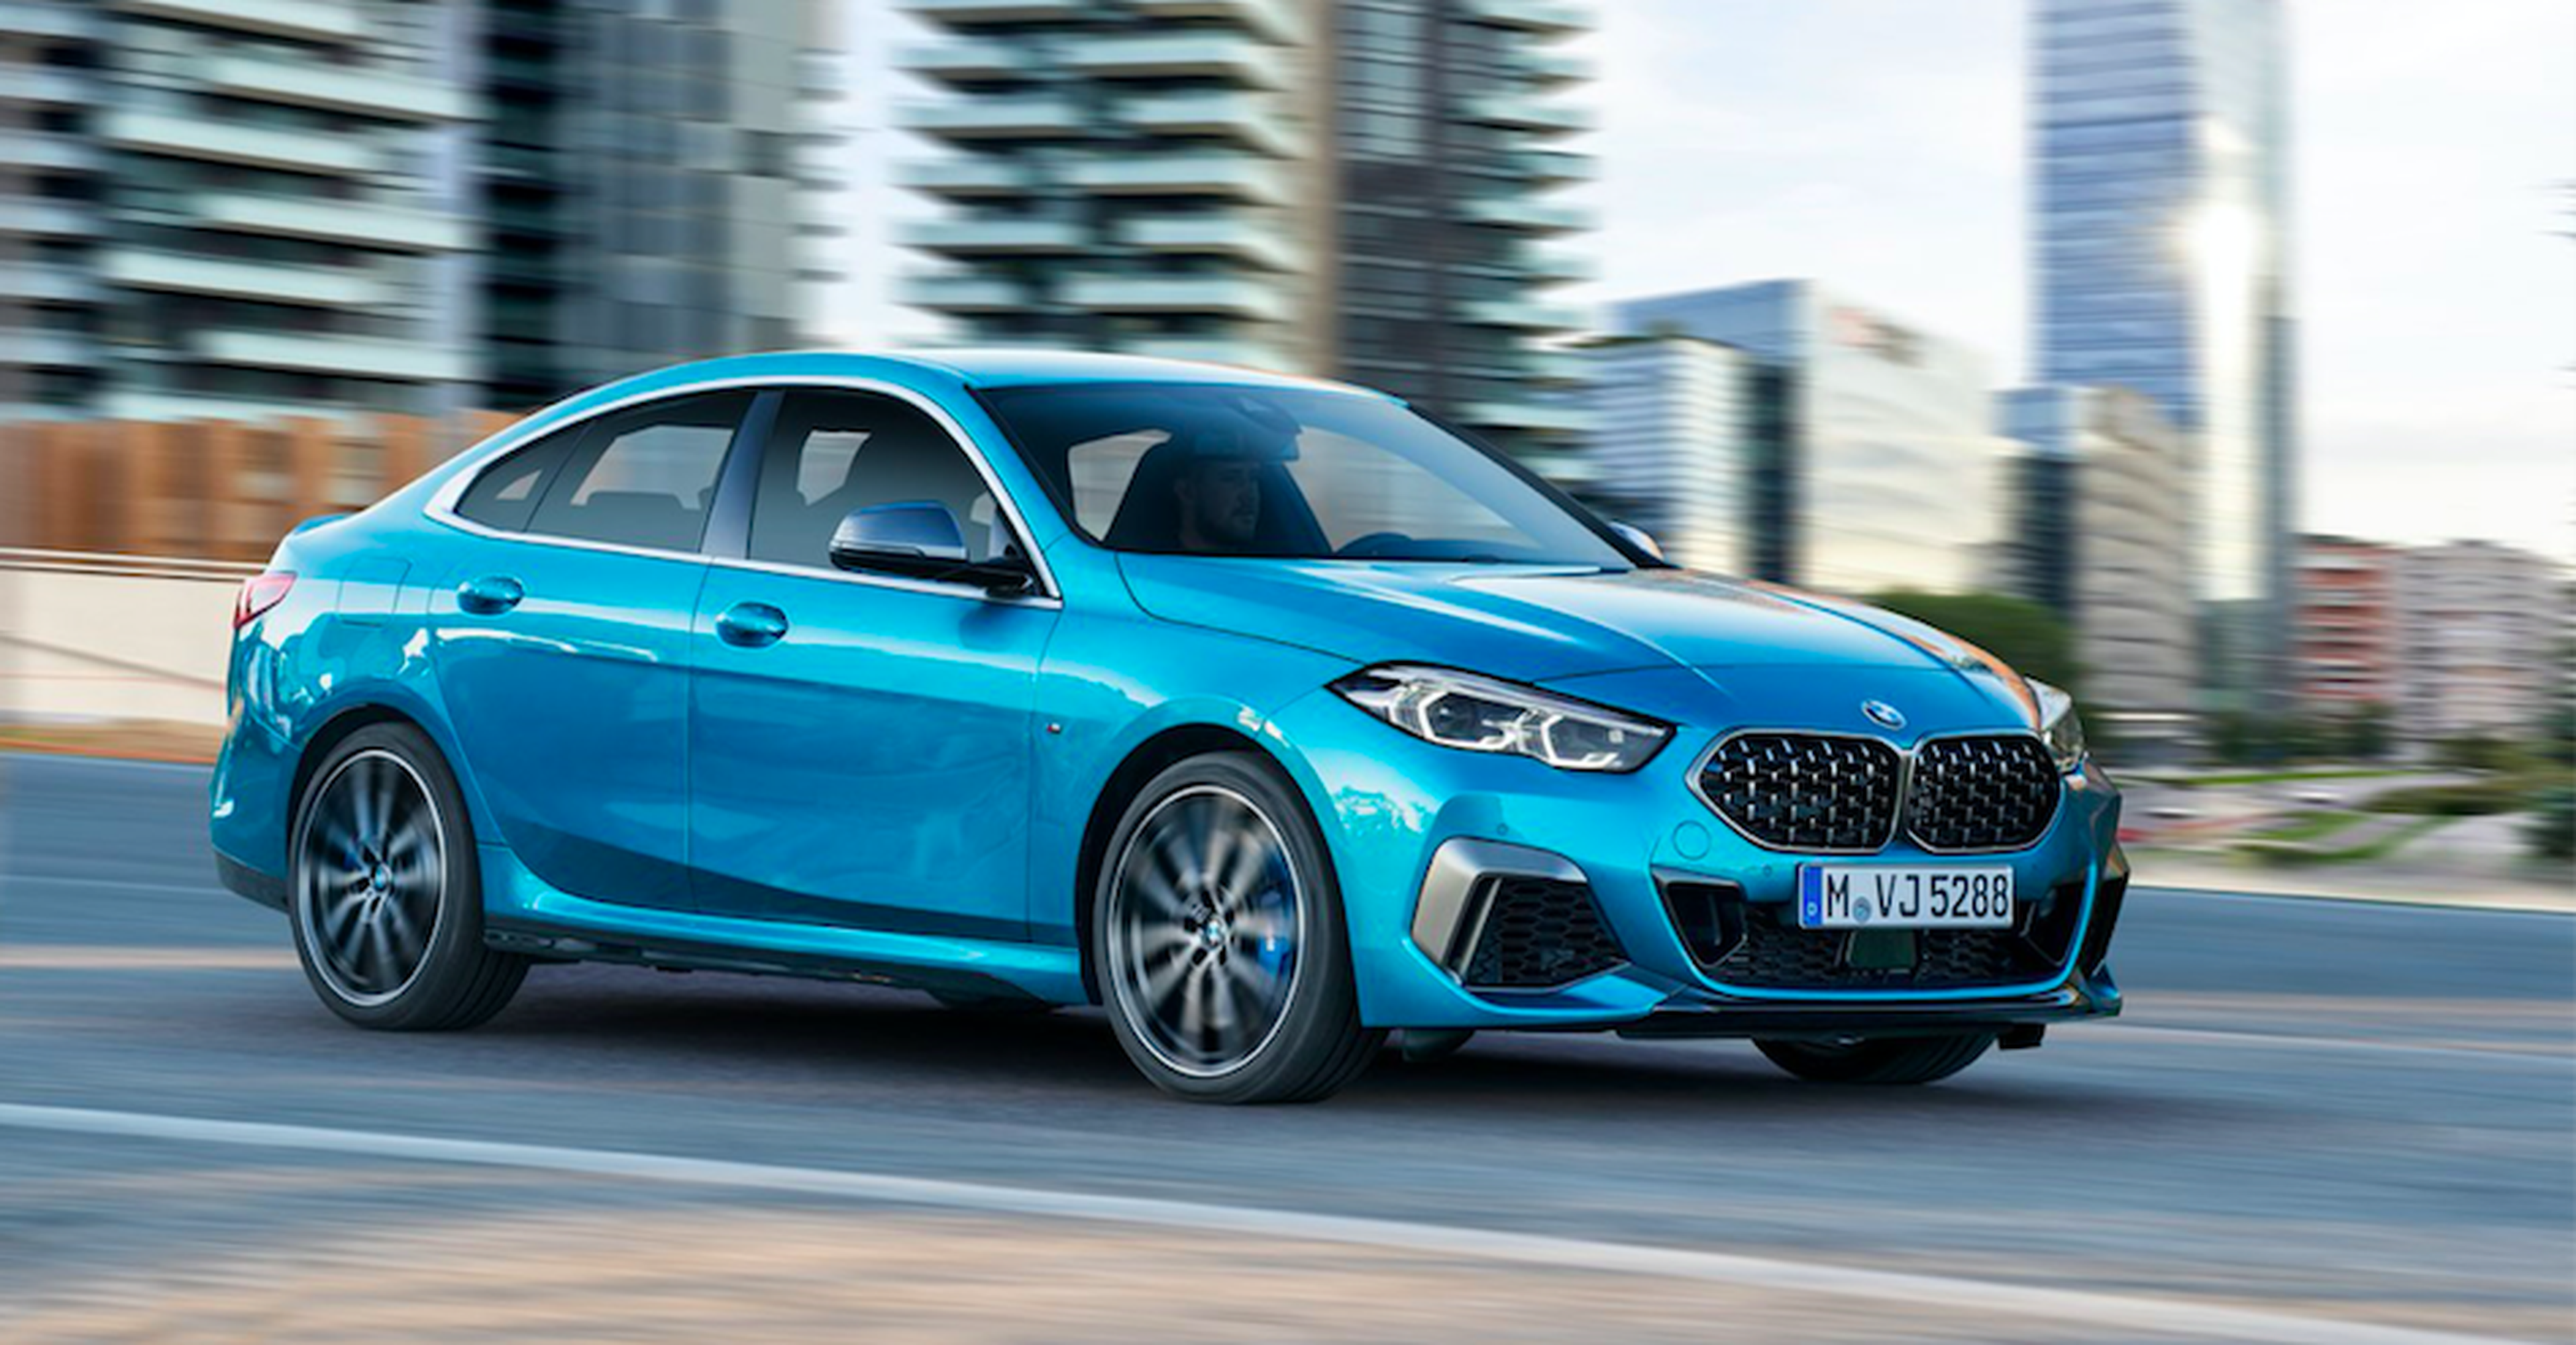 VÍDEO: BMW Serie 2 Gran Coupé 2020, todos los detalles y especificaciones